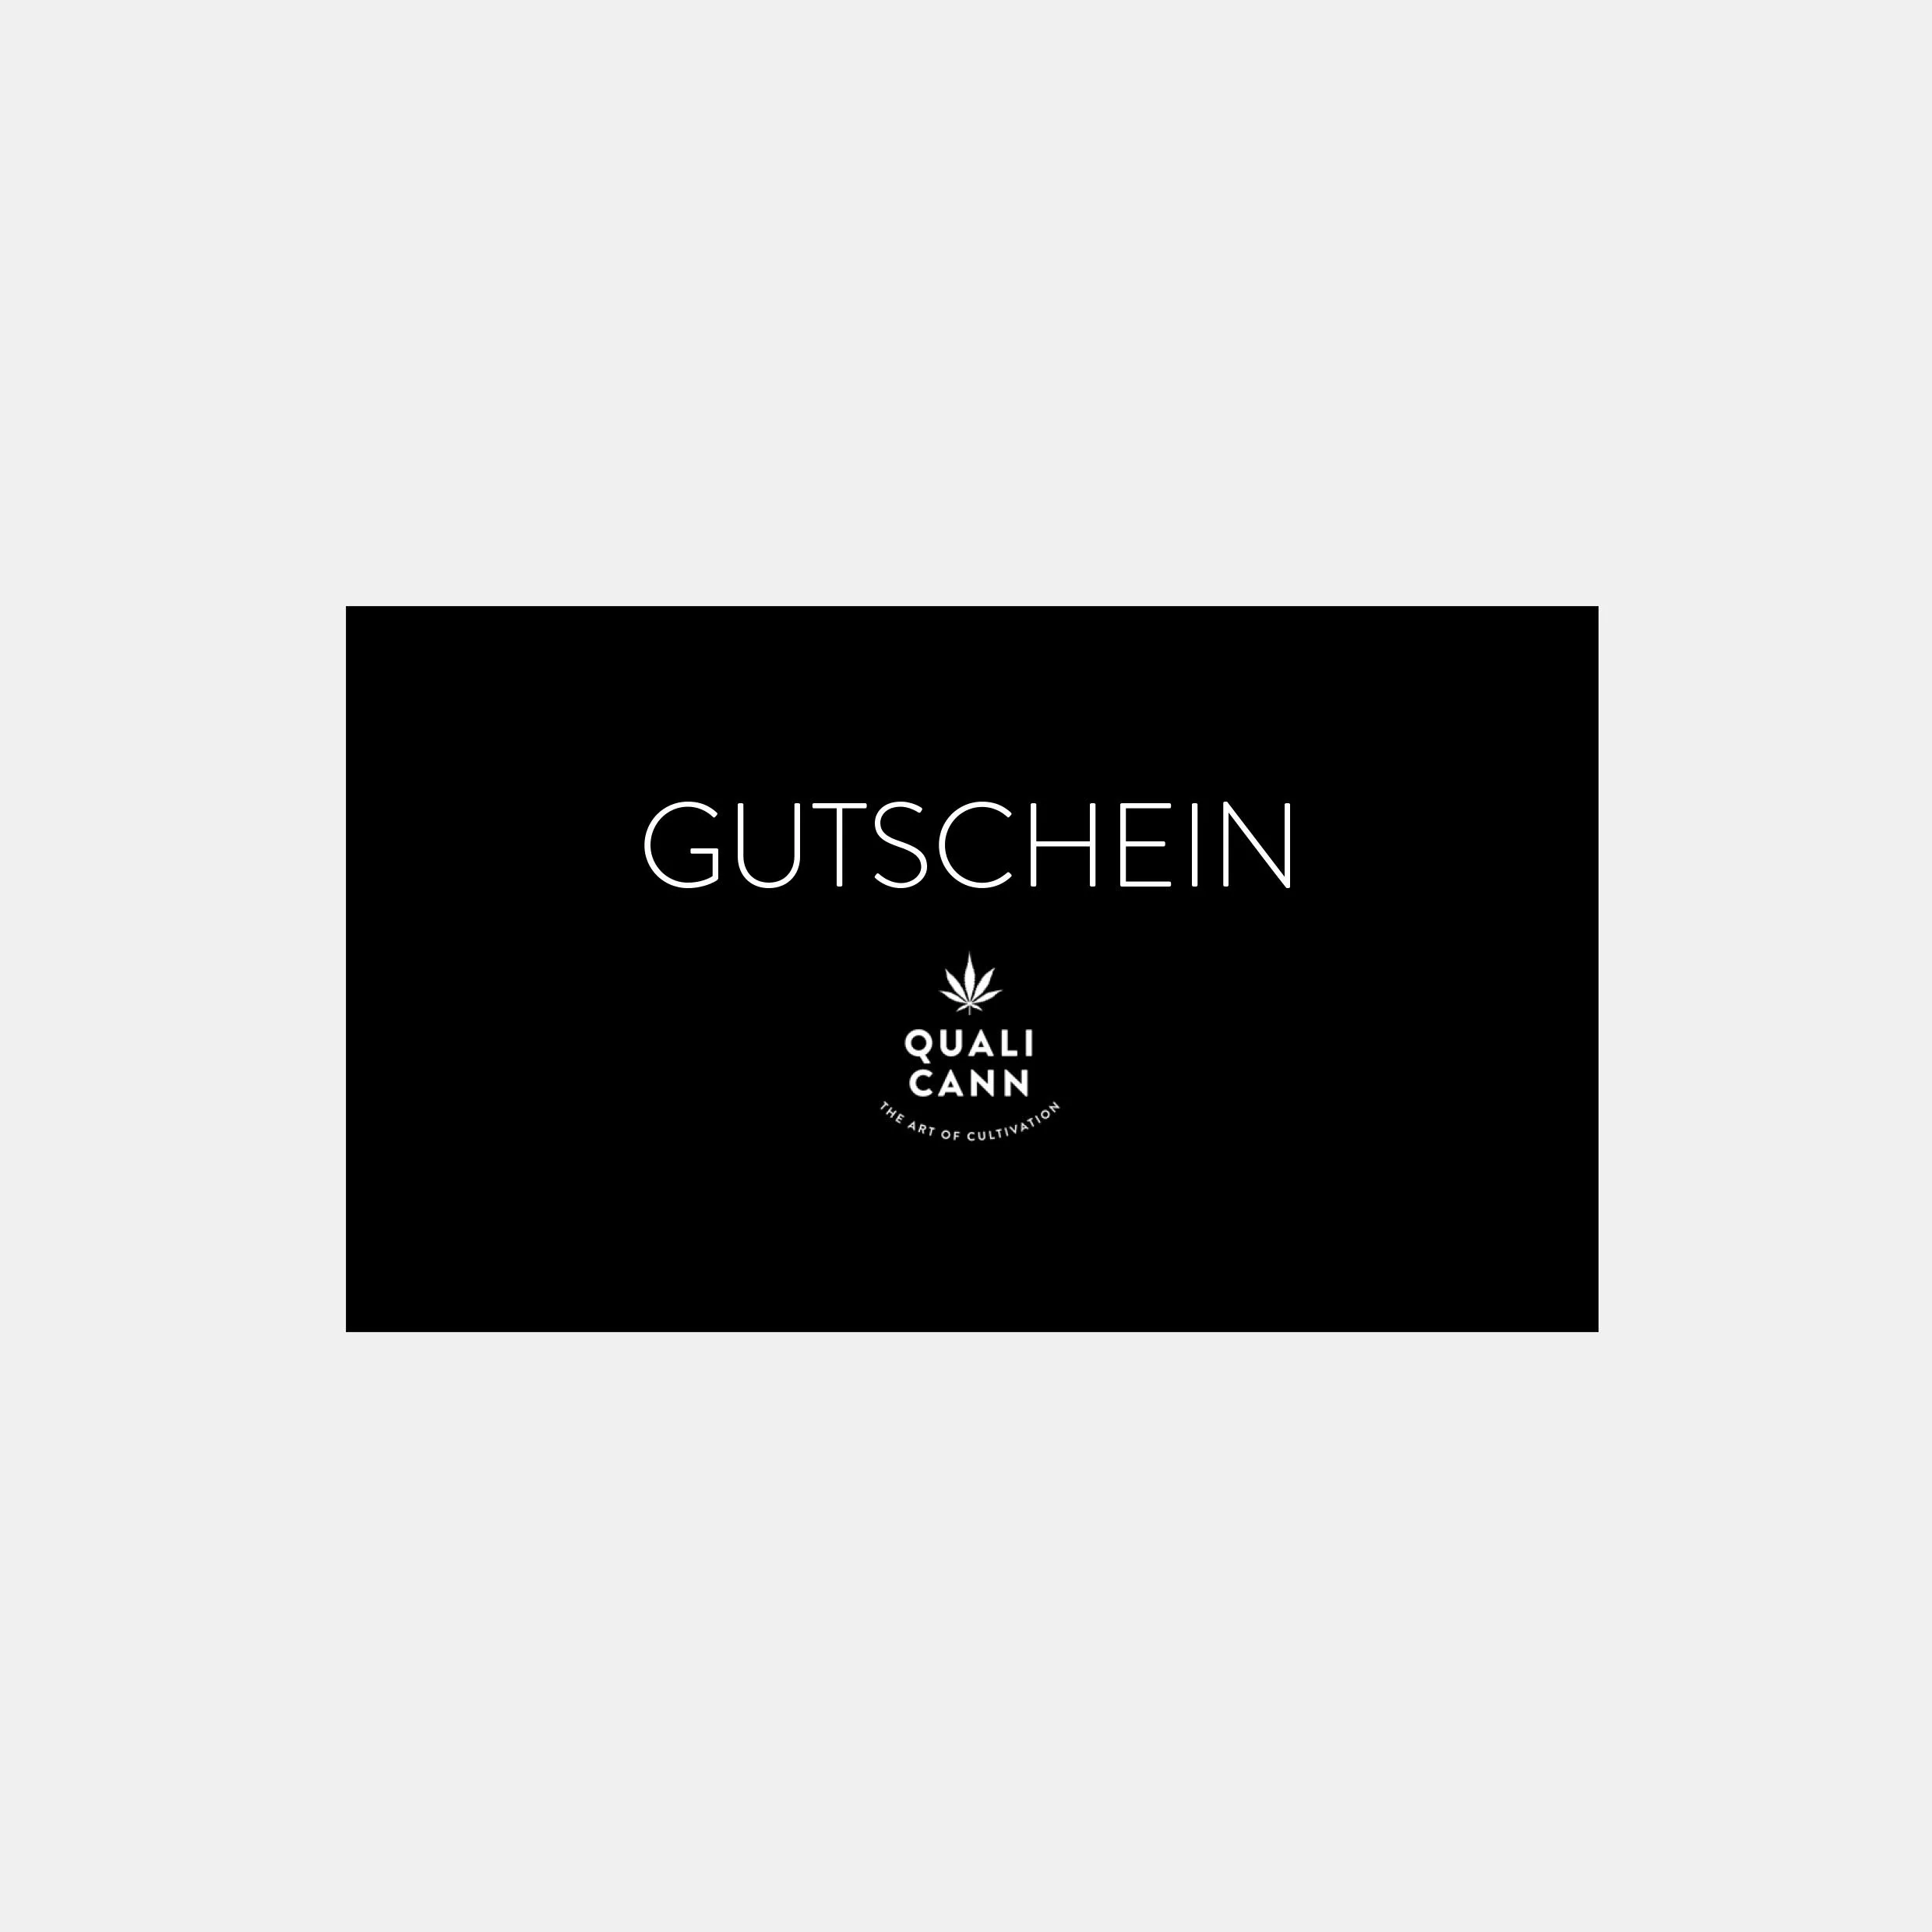 Ein schwarzer Geschenkgutschein mit der weißen Aufschrift "GUTSCHEIN" oben und dem Logo sowie dem Namen "QUALICANN – THE ART OF CULTIVATION" unten, für den Qualicann CBD Online-Shop.